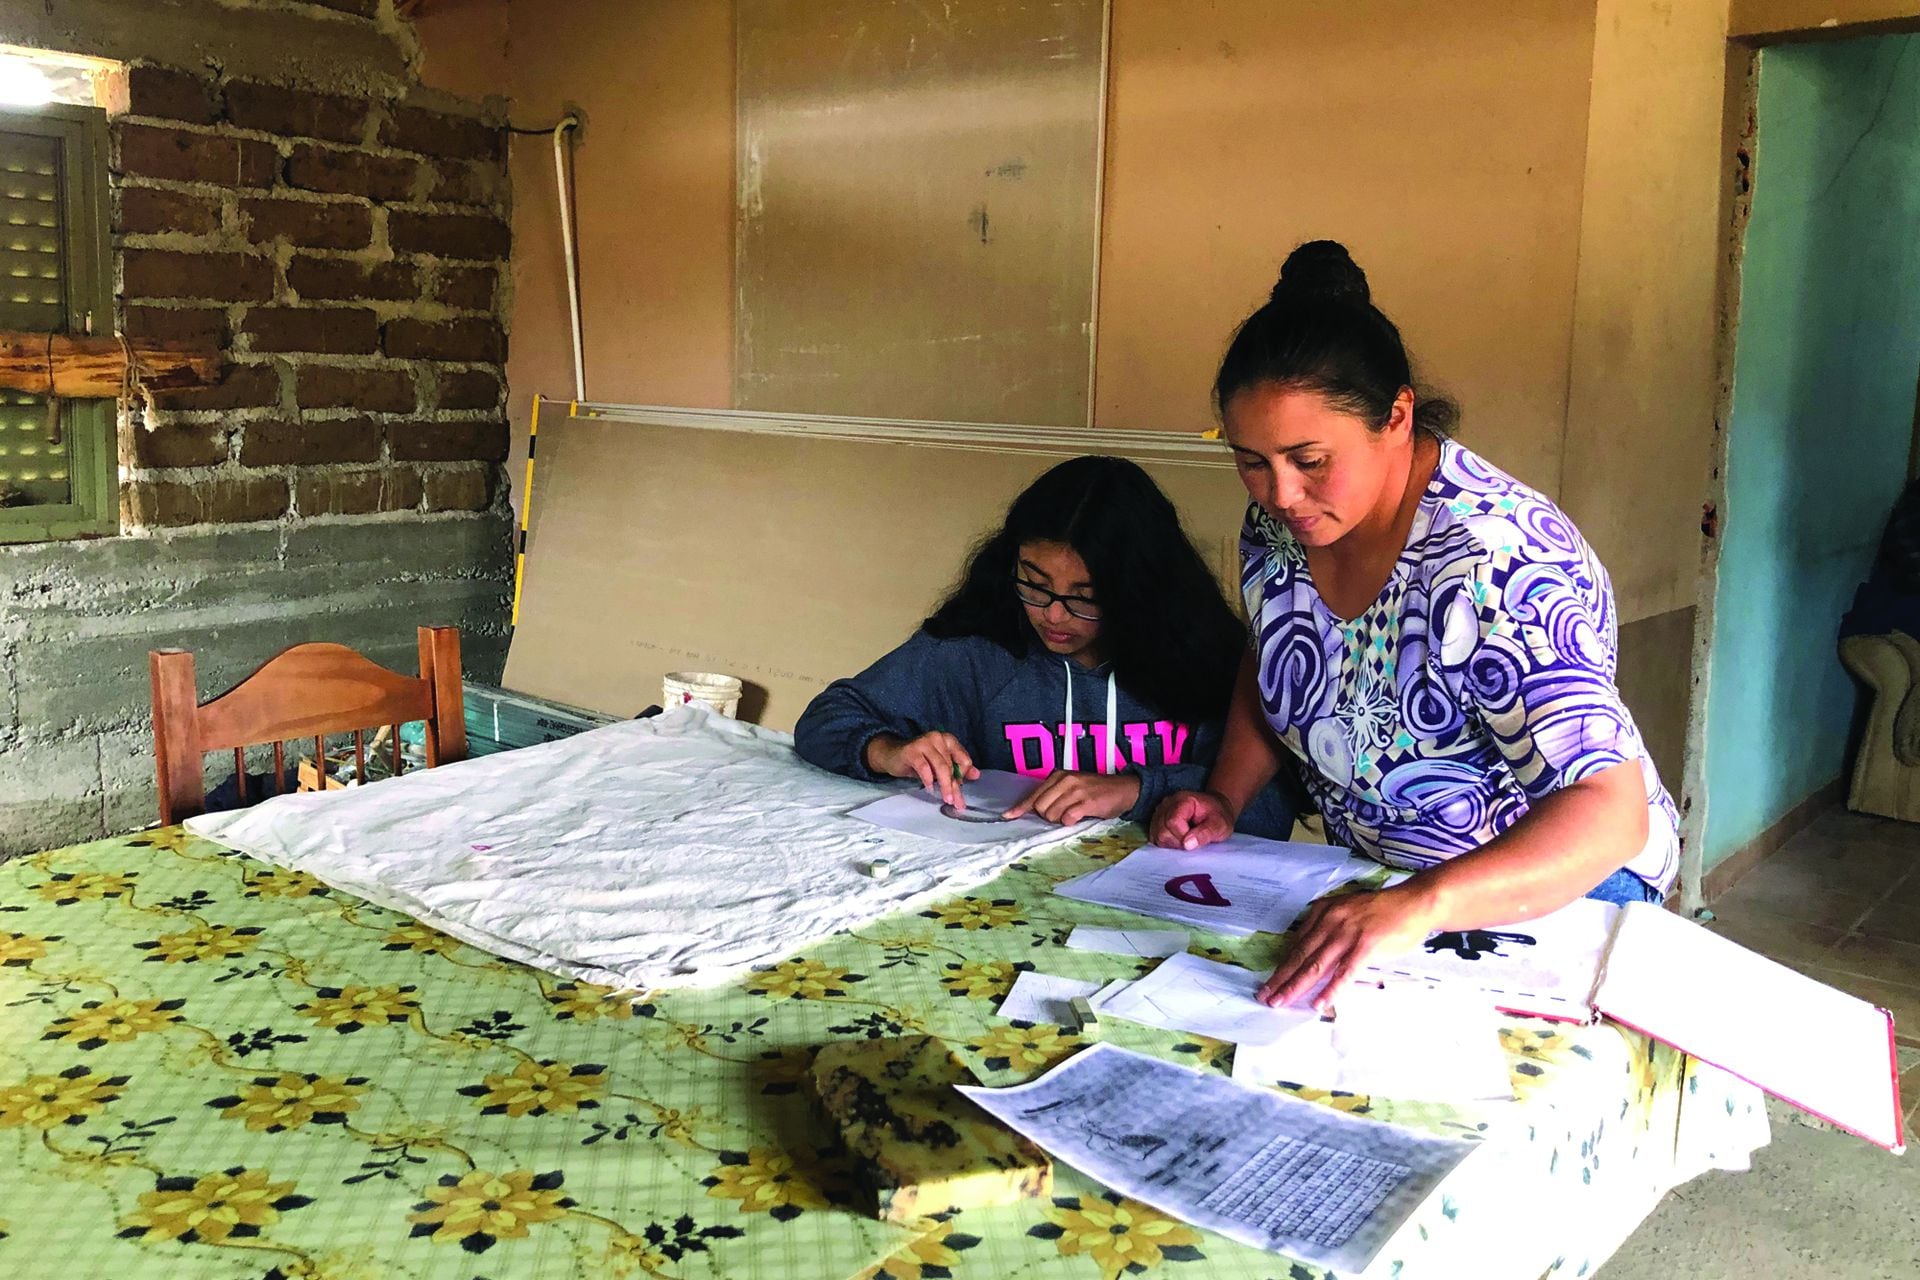 Durante la pandemia a Millarai Muñoz le costó poder hacer la tarea desde su casa porque sus papás no terminaron la escuela